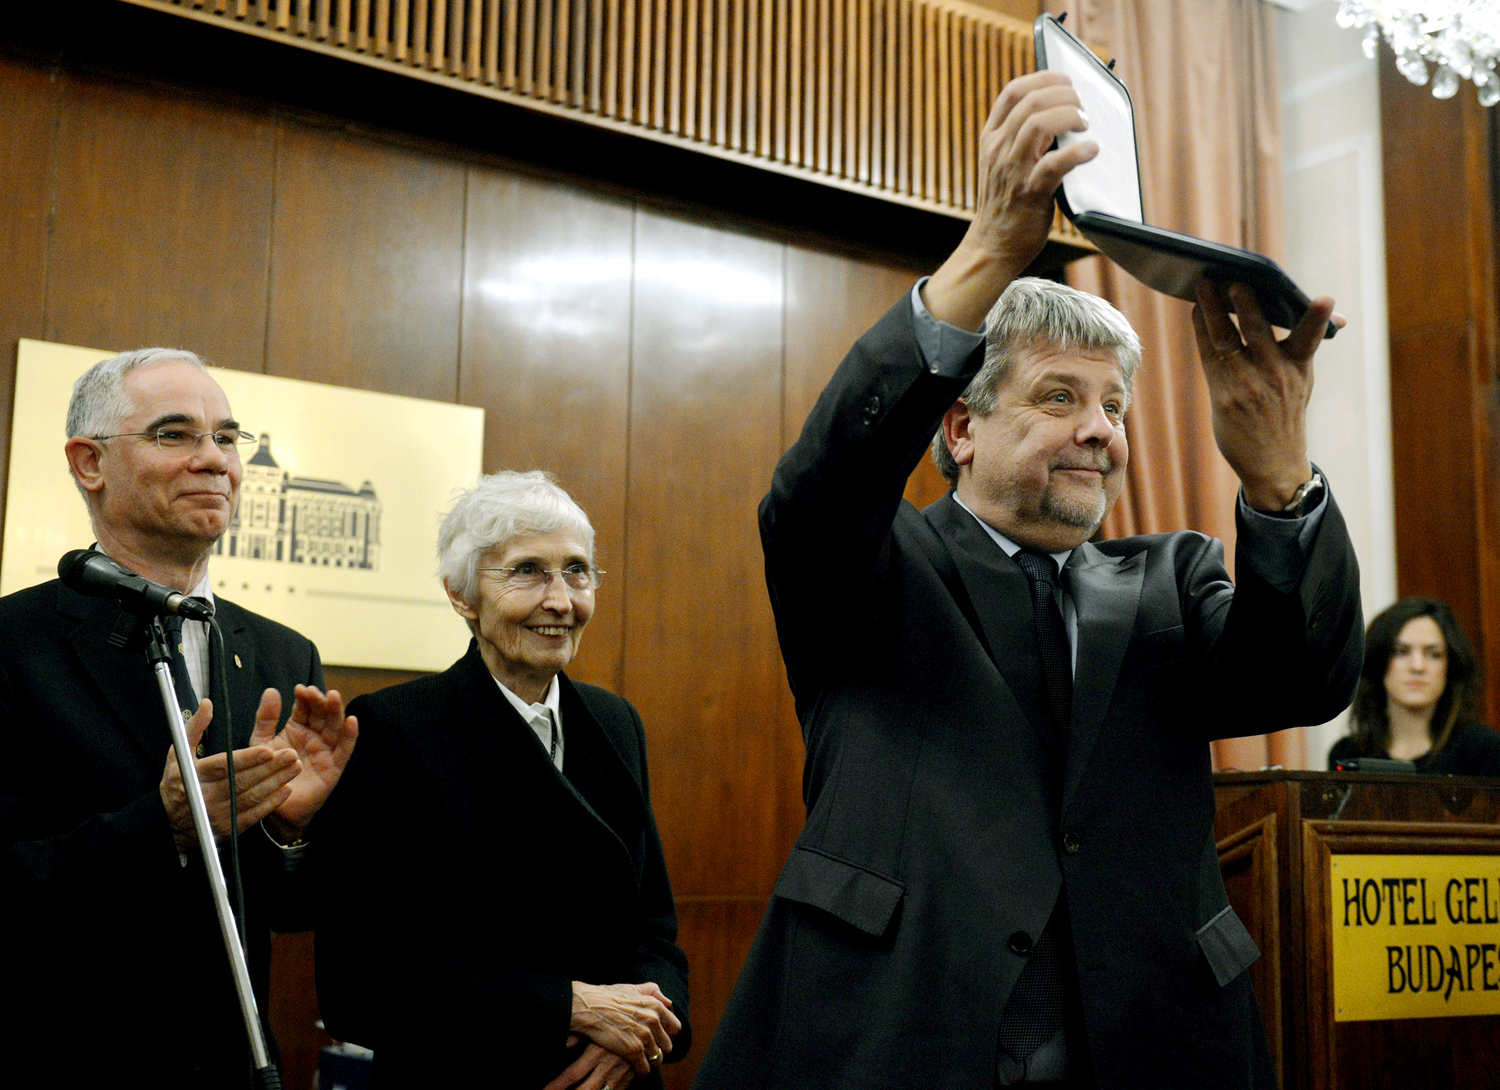 Balog Zoltán és Mádl Dalma adta át a Fidesz pártalapítványának díját Csizmadia Lászlónak, a Békemenet szervezőjének